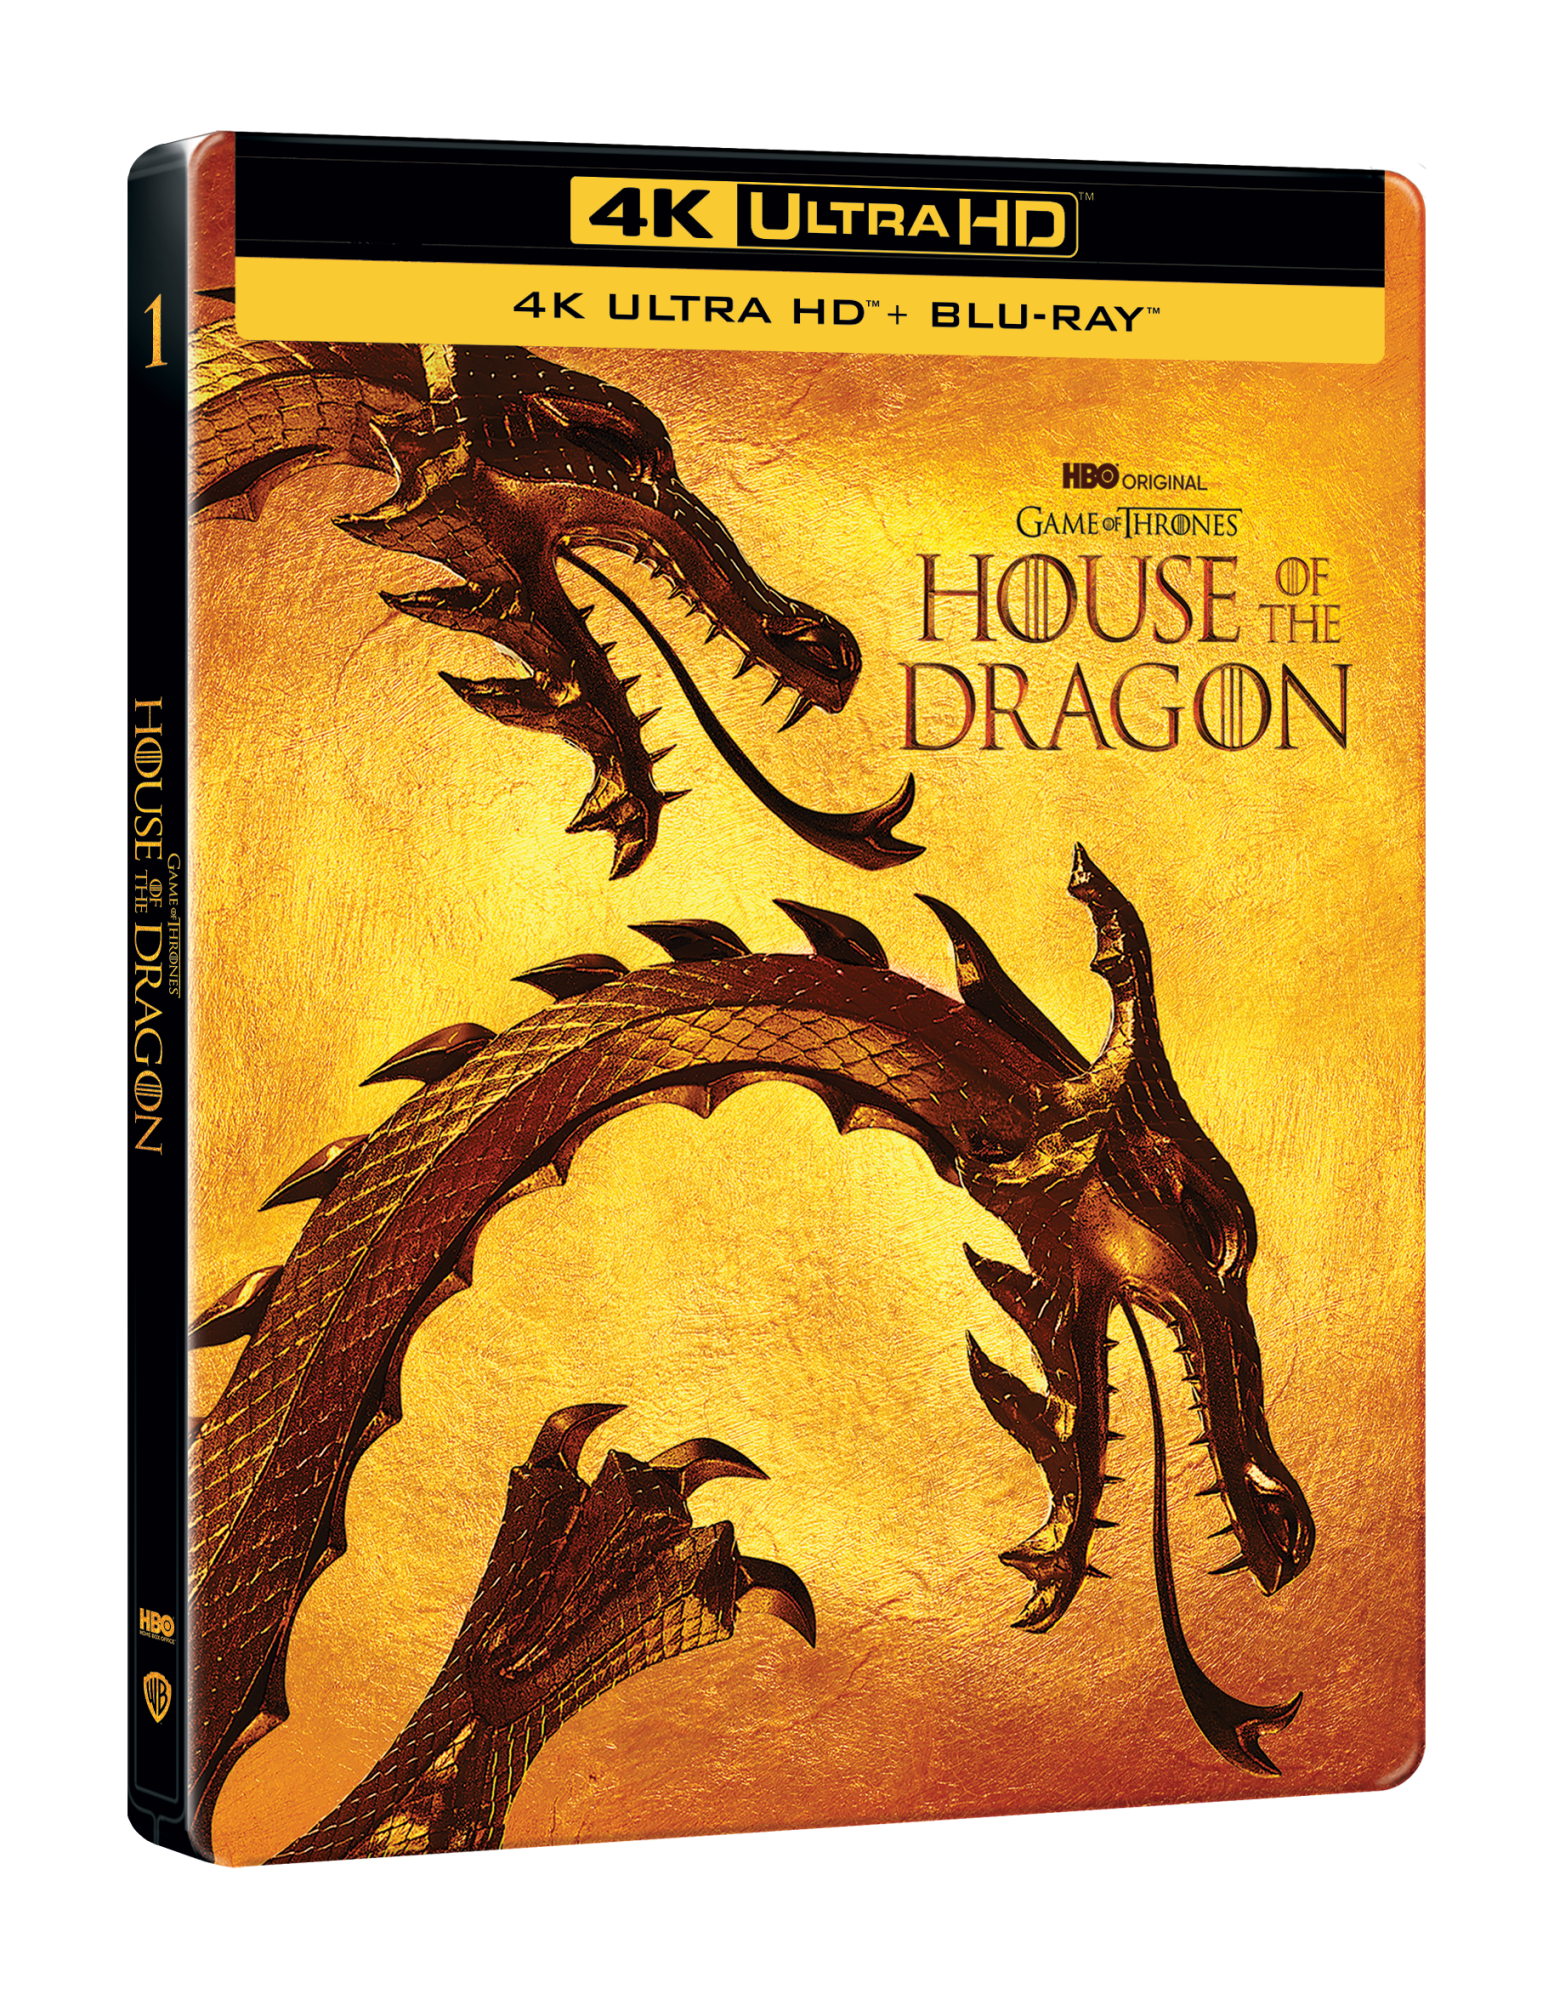 Blu-Ray 4K Uhd House Of The Dragon - Stagione 01 (4 4K Uhd) (Steelbook) NUOVO SIGILLATO, EDIZIONE DEL 14/02/2023 SUBITO DISPONIBILE